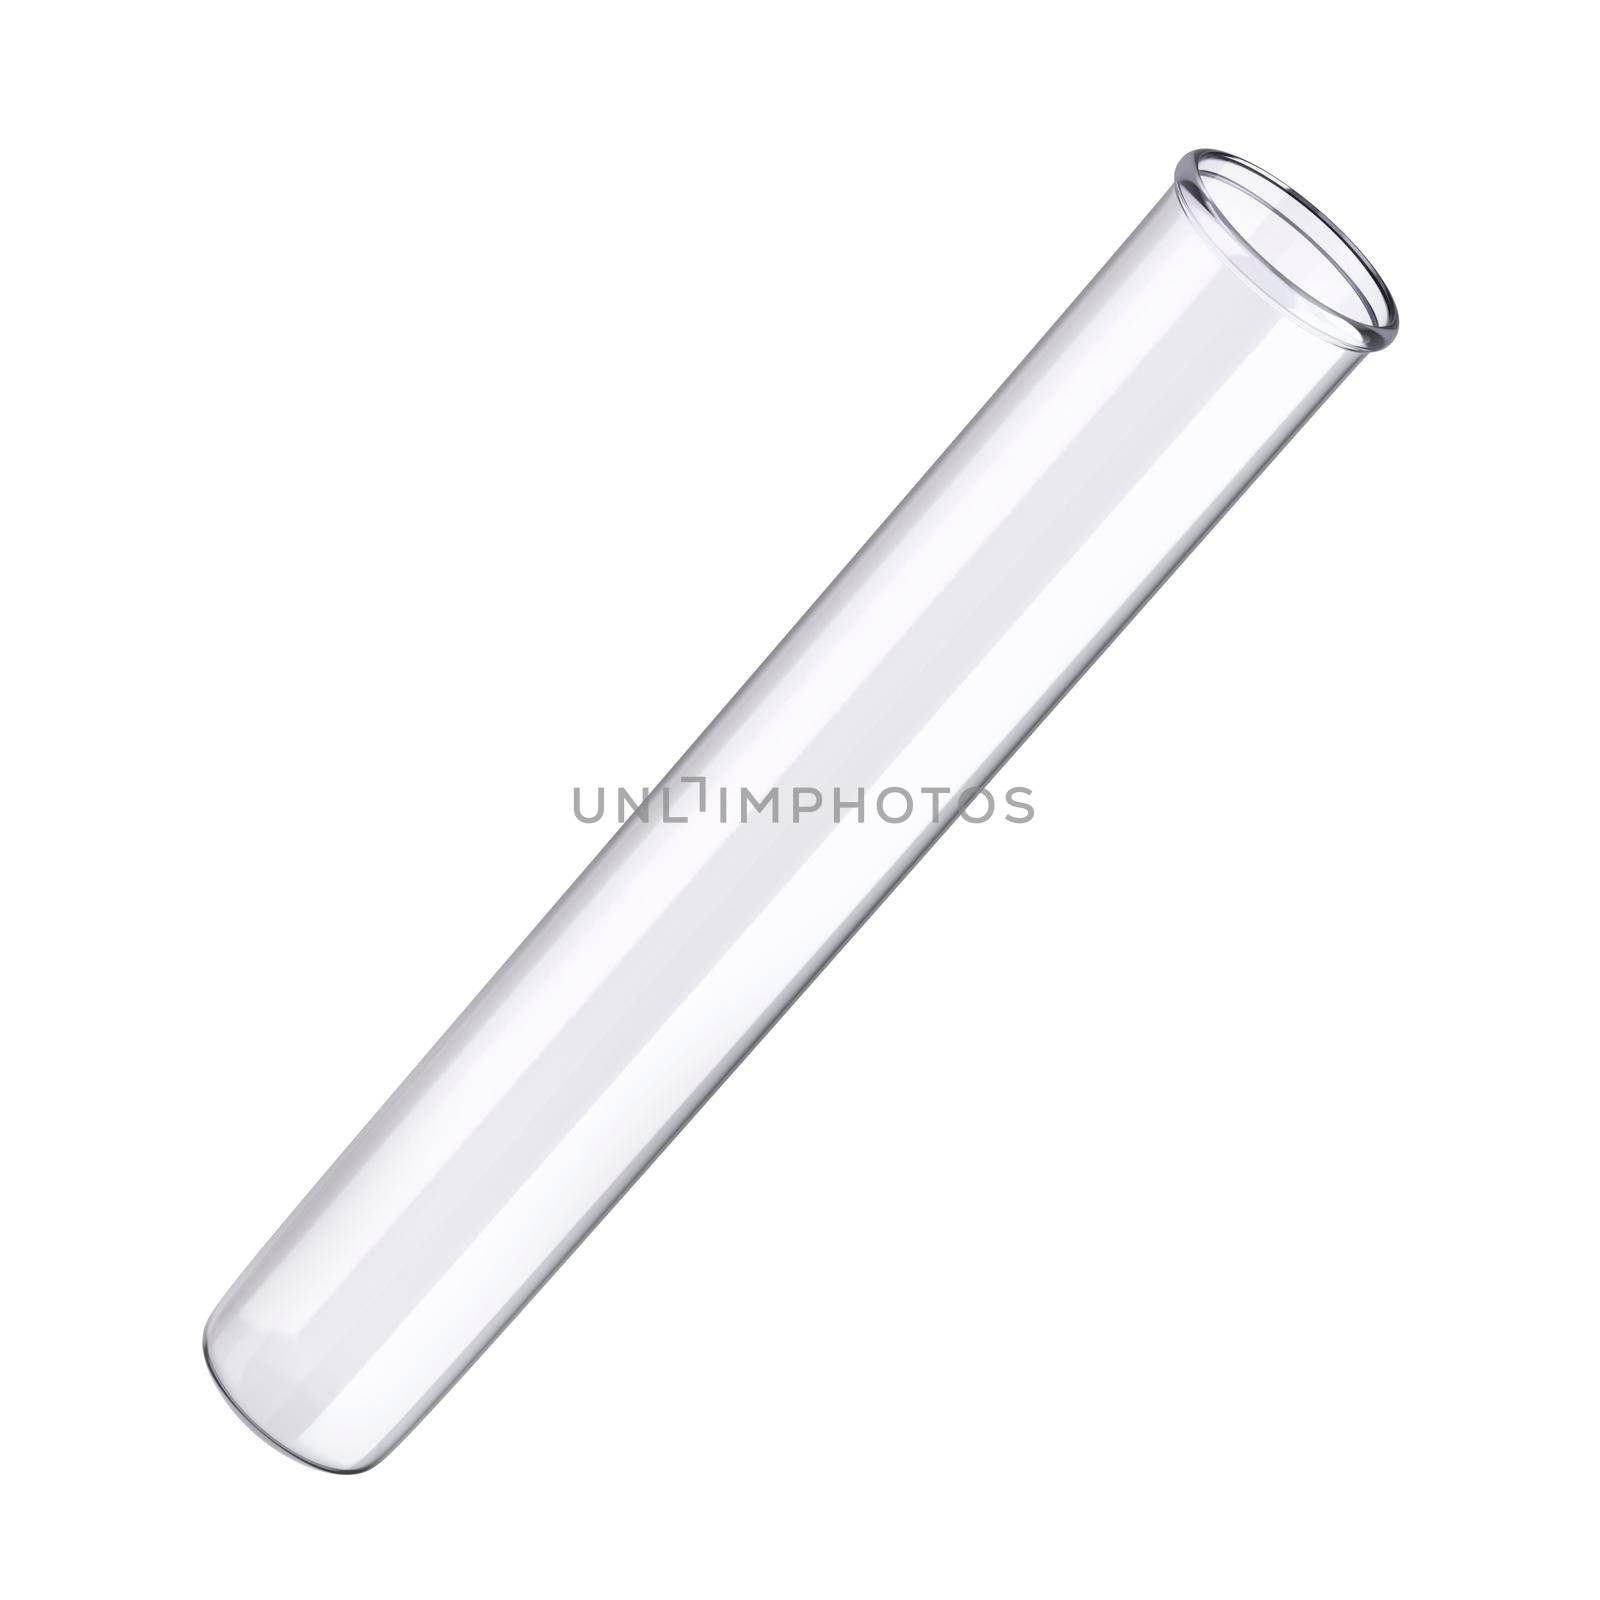 Empty test tube isolated on white background